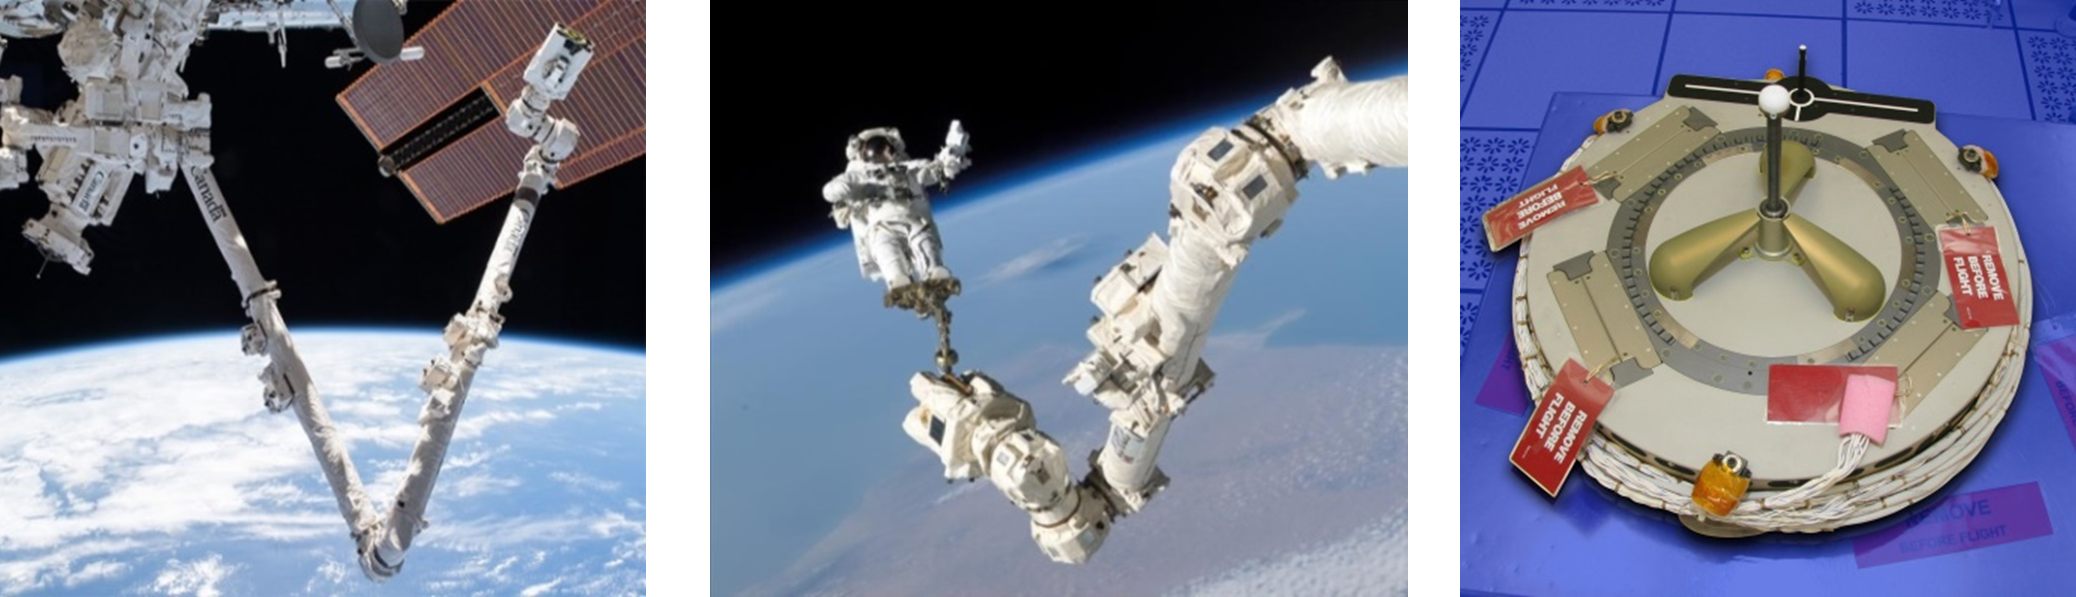 Canadarm 2 desde el exterior de la ISS y dispositivo de conexión en sus extremos (Latching End Effector).